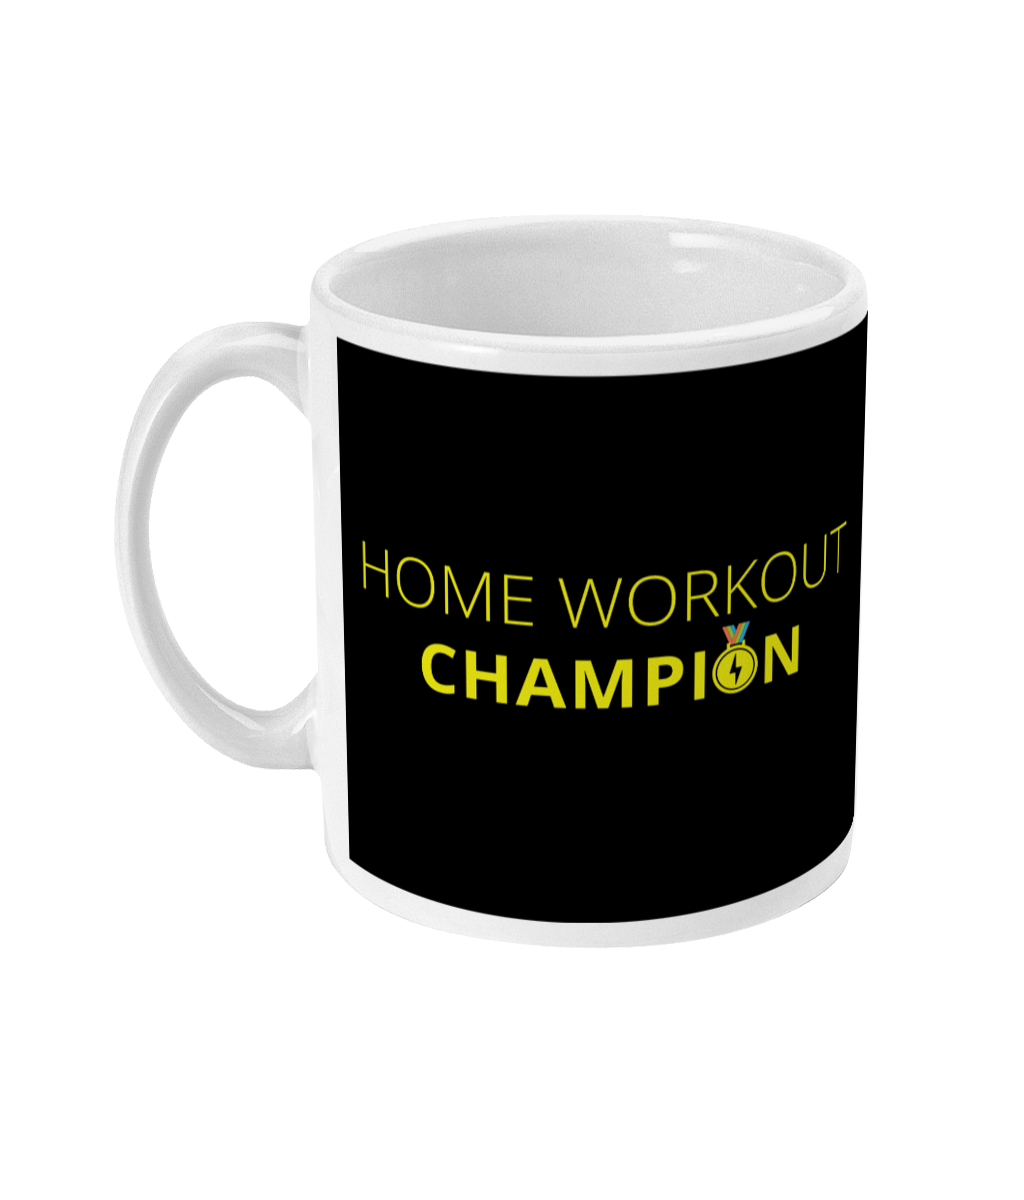 Home Workout Champion Mug